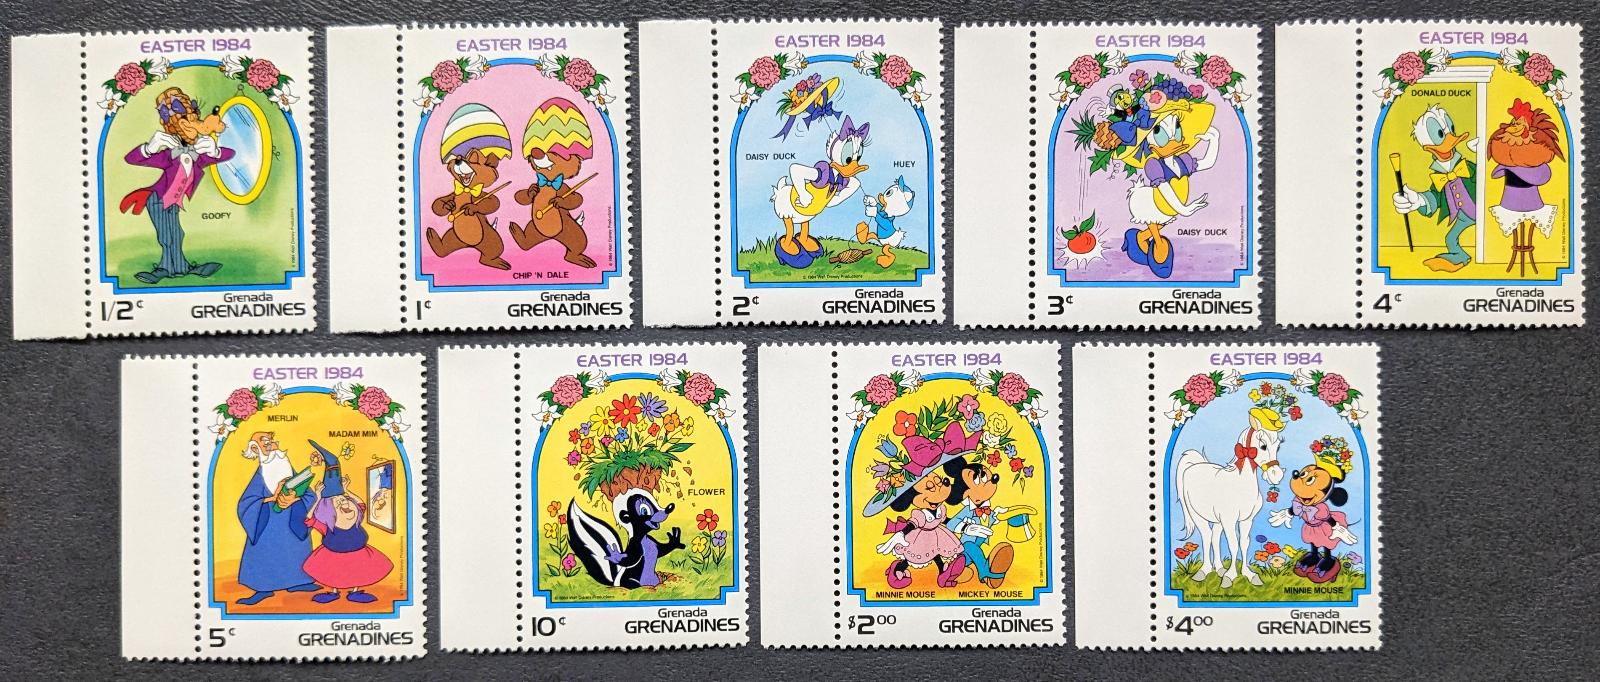 Disney Grenadines detské, kompletná séria 9ks známok - Známky